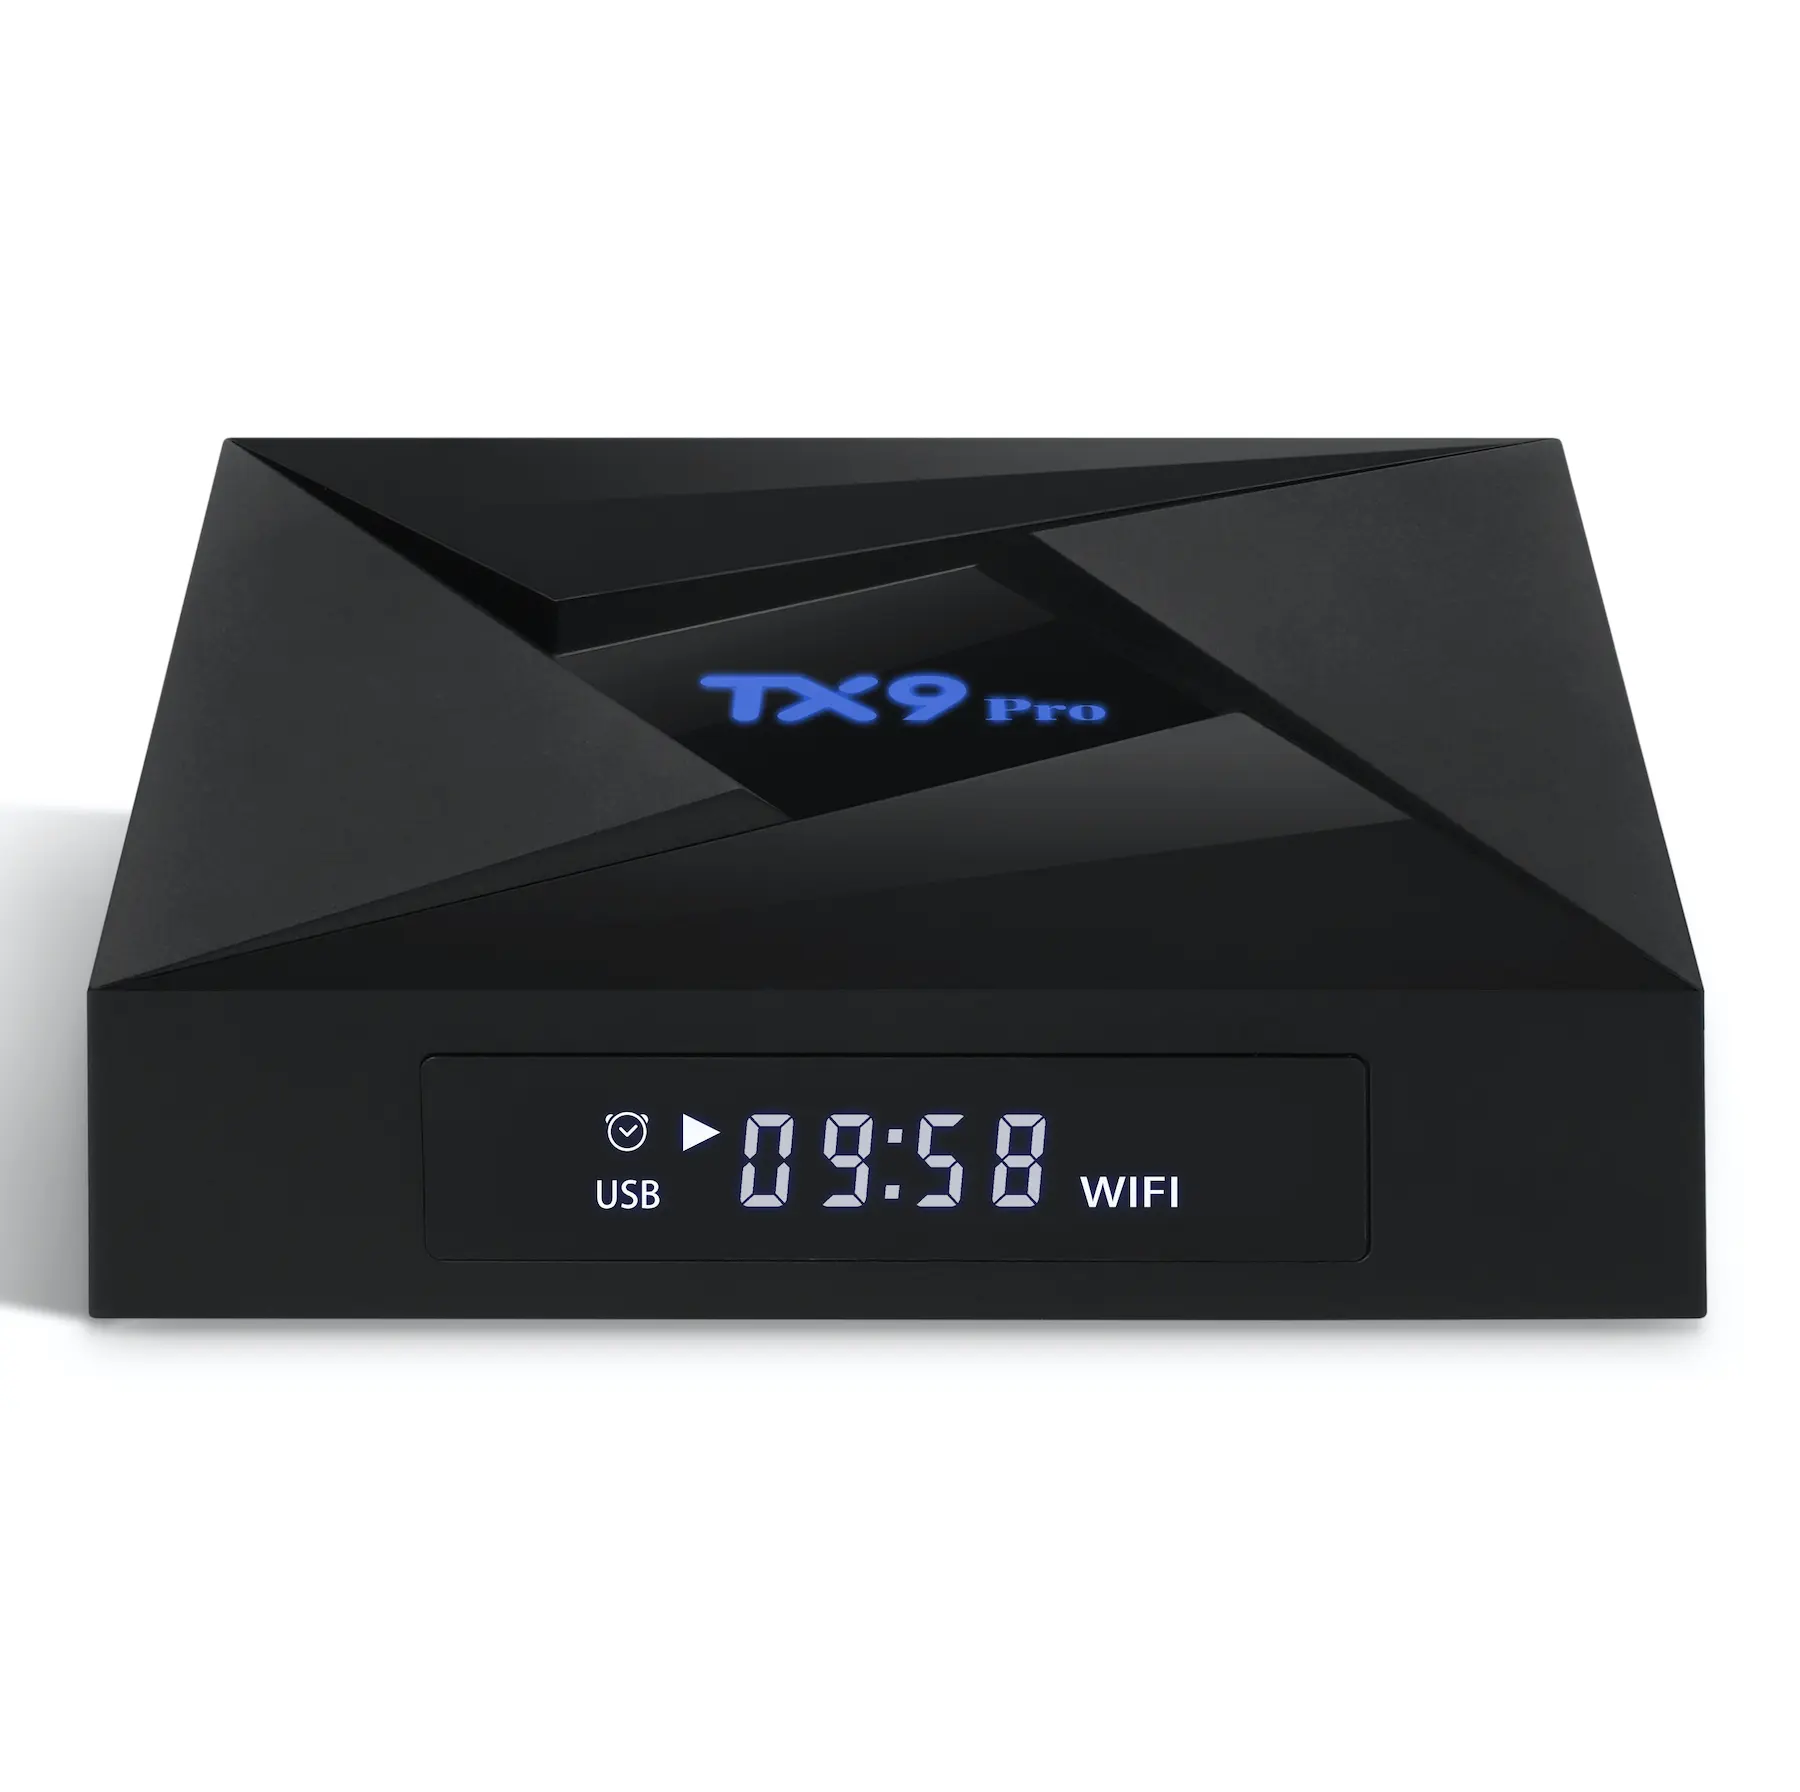 تي في بوكس تانكس الأصلي, تي في بوكس تانكس الأصلي TX9 برو صندوق التلفزيون ثماني النواة Amlogic S912 أندرويد 7.1 2G16G 3G32G مع واي فاي BT4.0 يدعم مجانًا s e x صندوق تلفزيون للأفلام